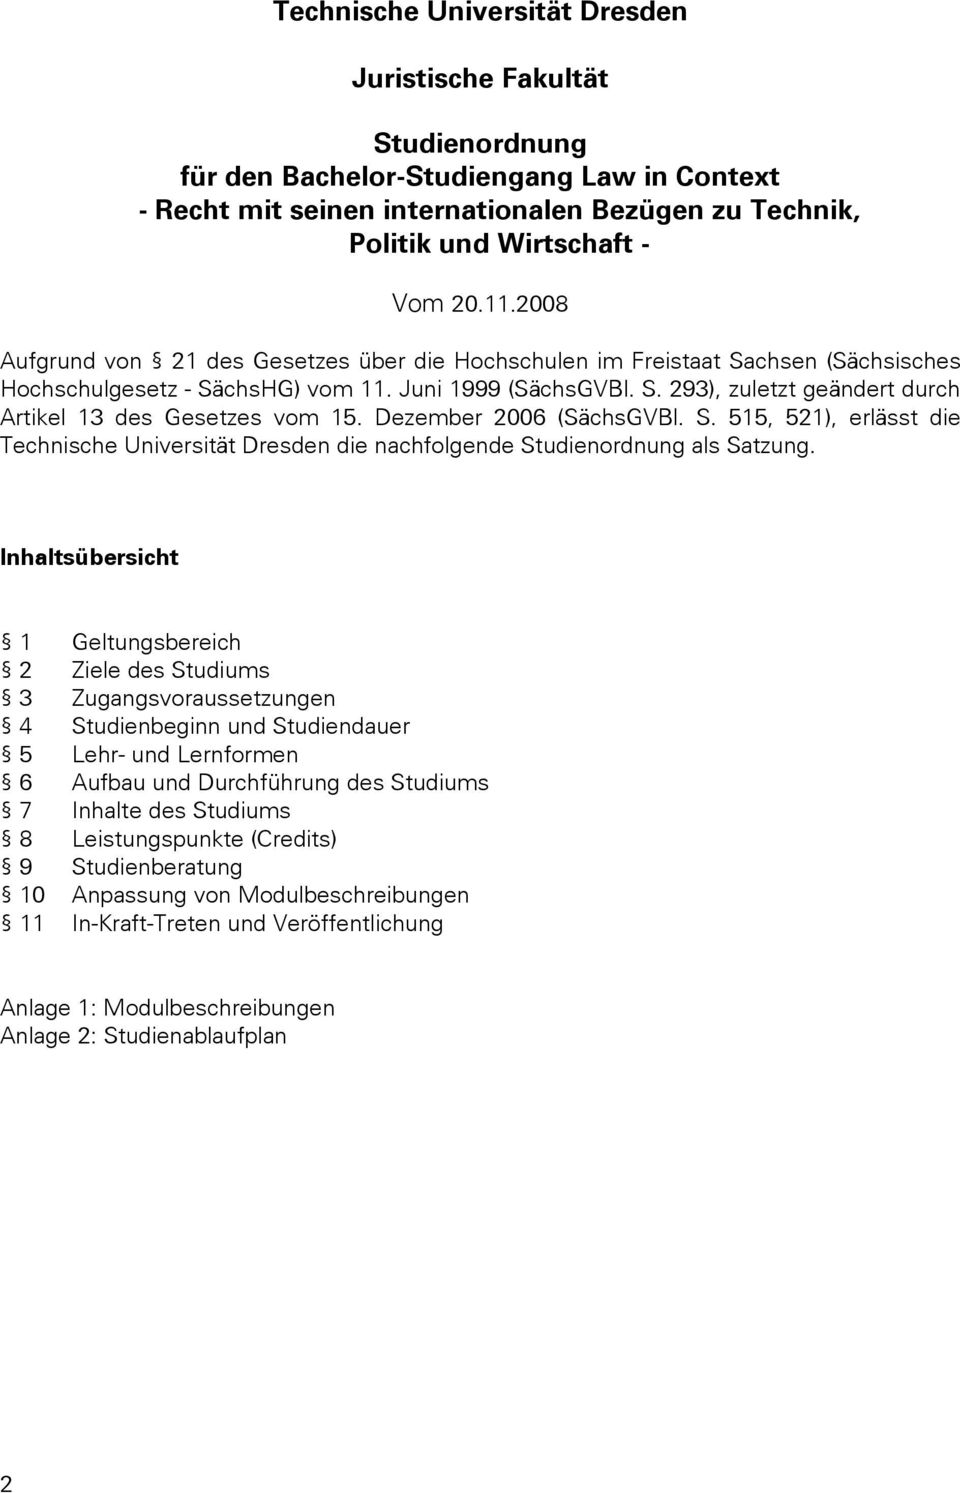 Dezember 2006 (SächsGVBl. S. 515, 521), erlässt die Technische Universität Dresden die nachfolgende Studienordnung als Satzung.